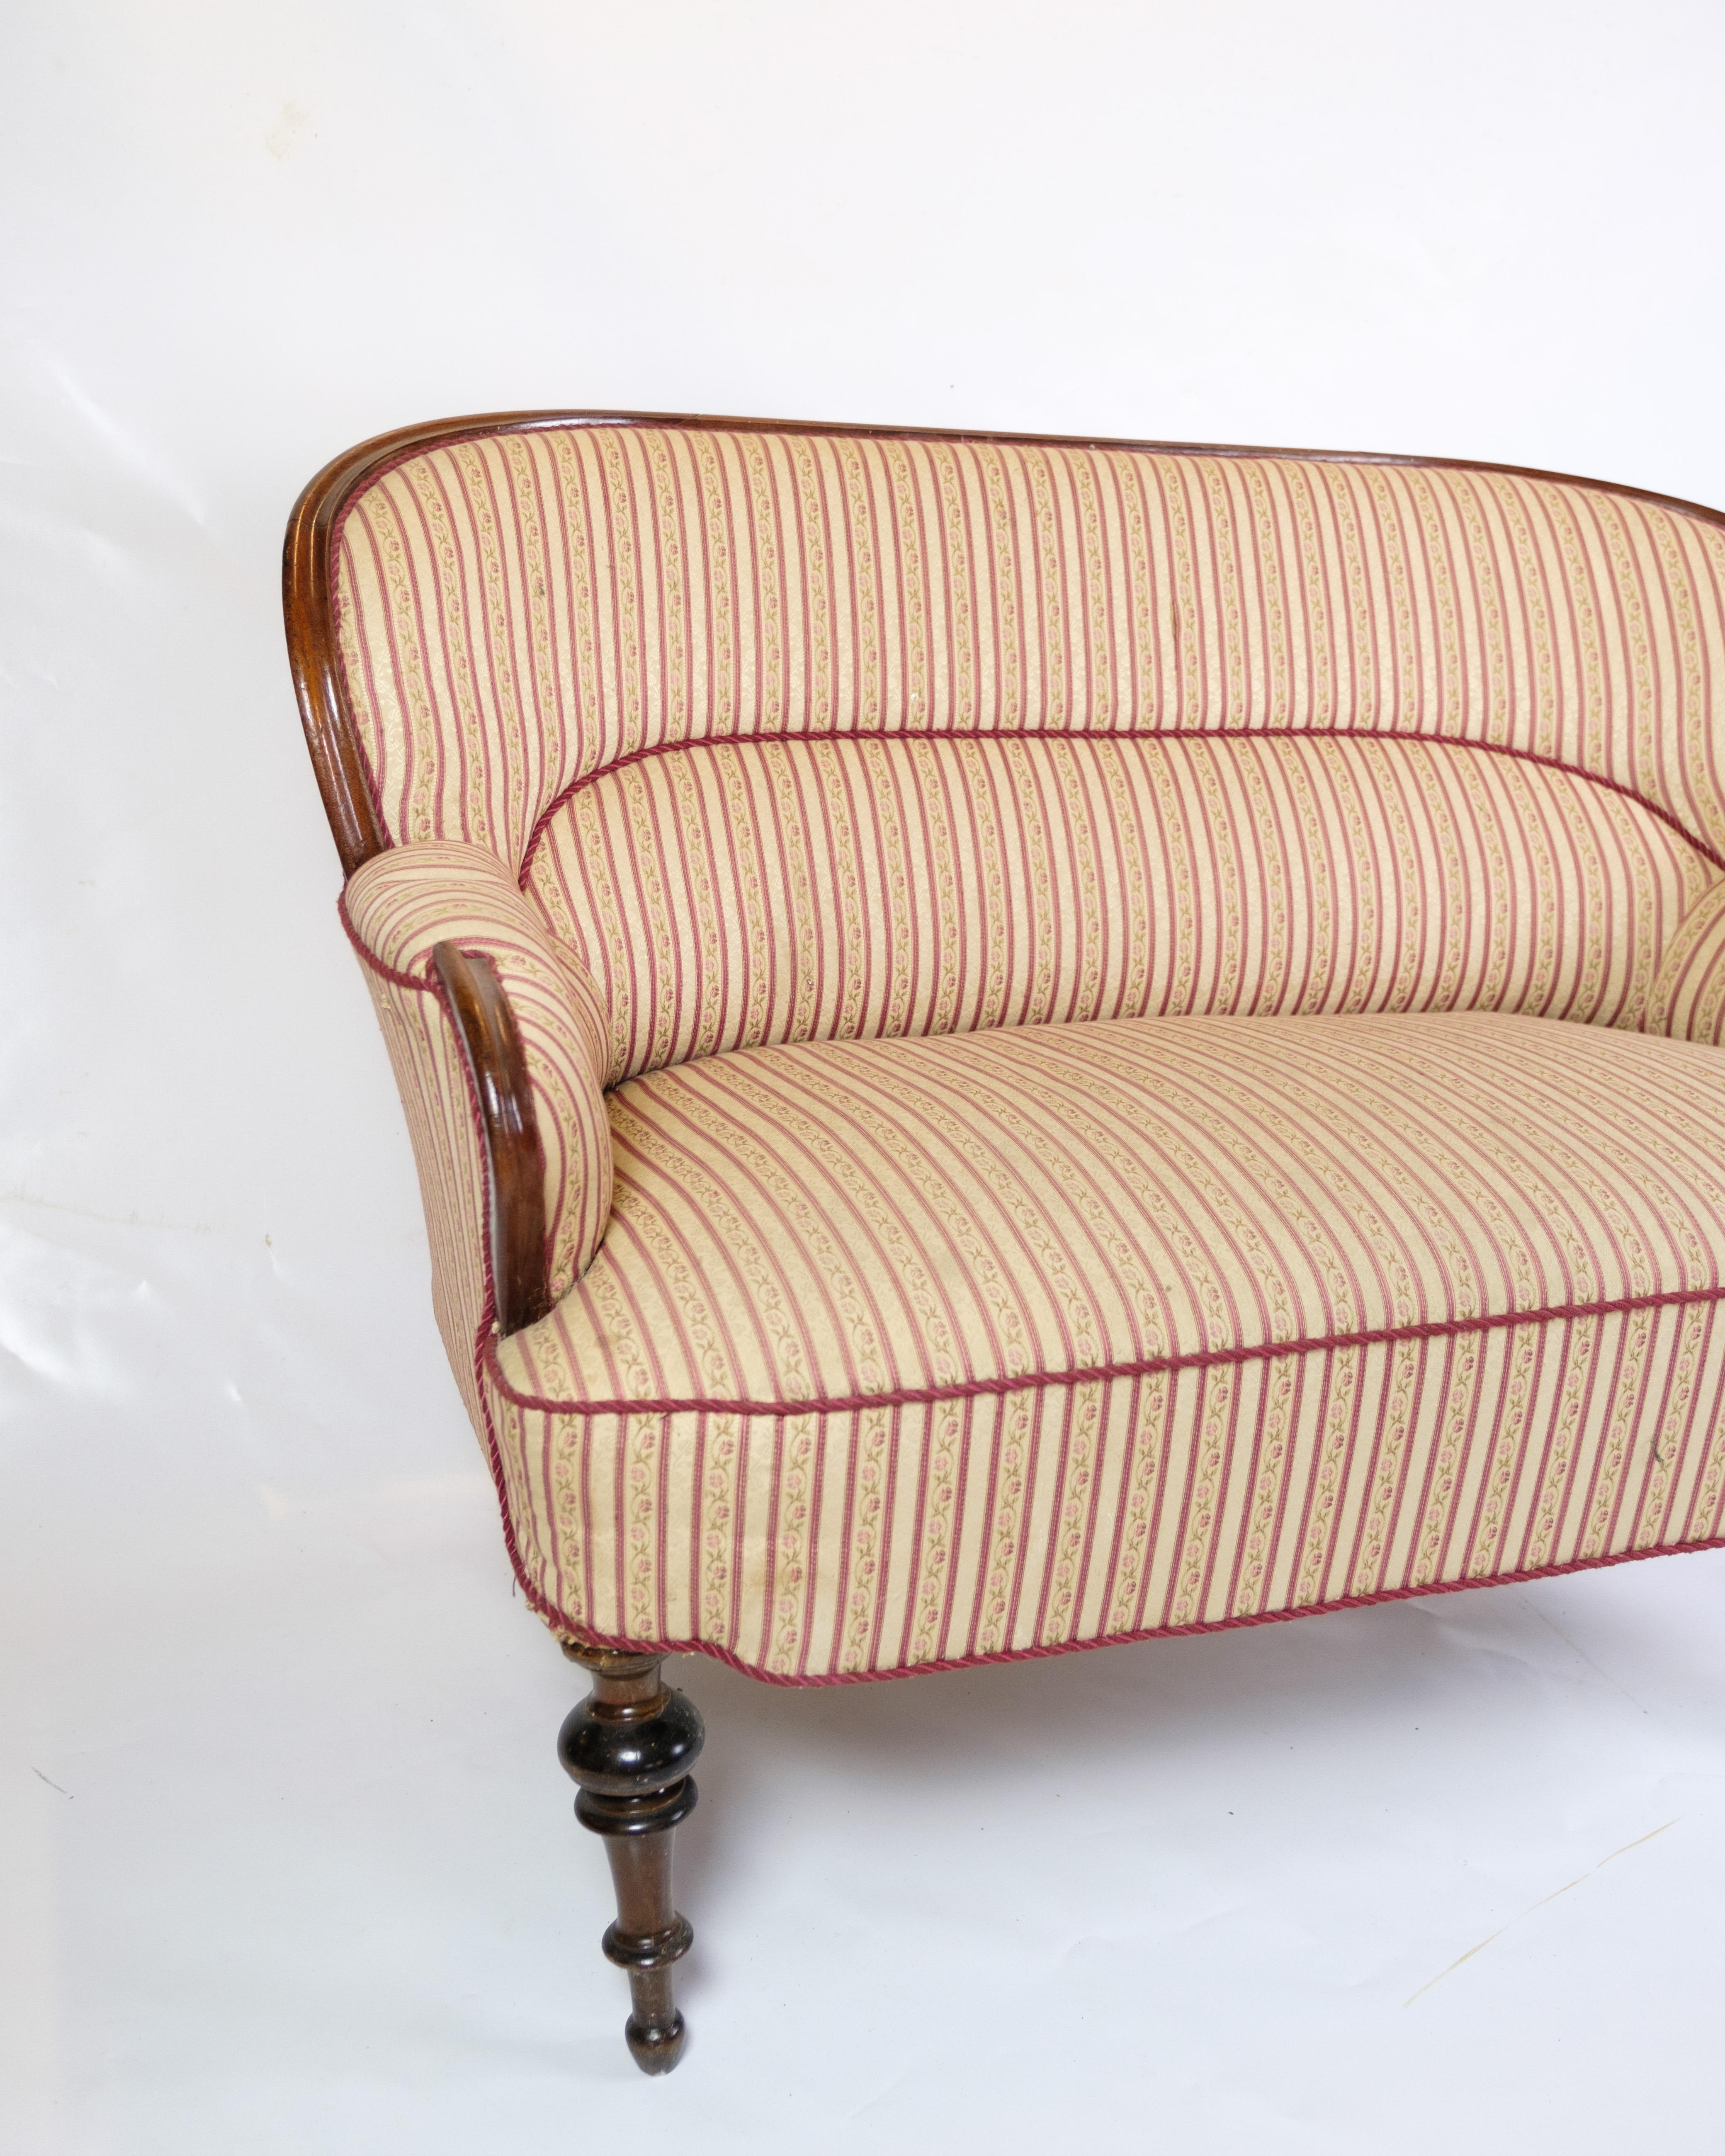 Ce canapé ancien à deux places, datant d'environ 1890, est un bel exemple d'artisanat et d'élégance d'époque. Fabriqué en bois d'acajou, le canapé dégage un charme intemporel et une grande durabilité. Tapissé d'un tissu aux motifs magnifiques, il